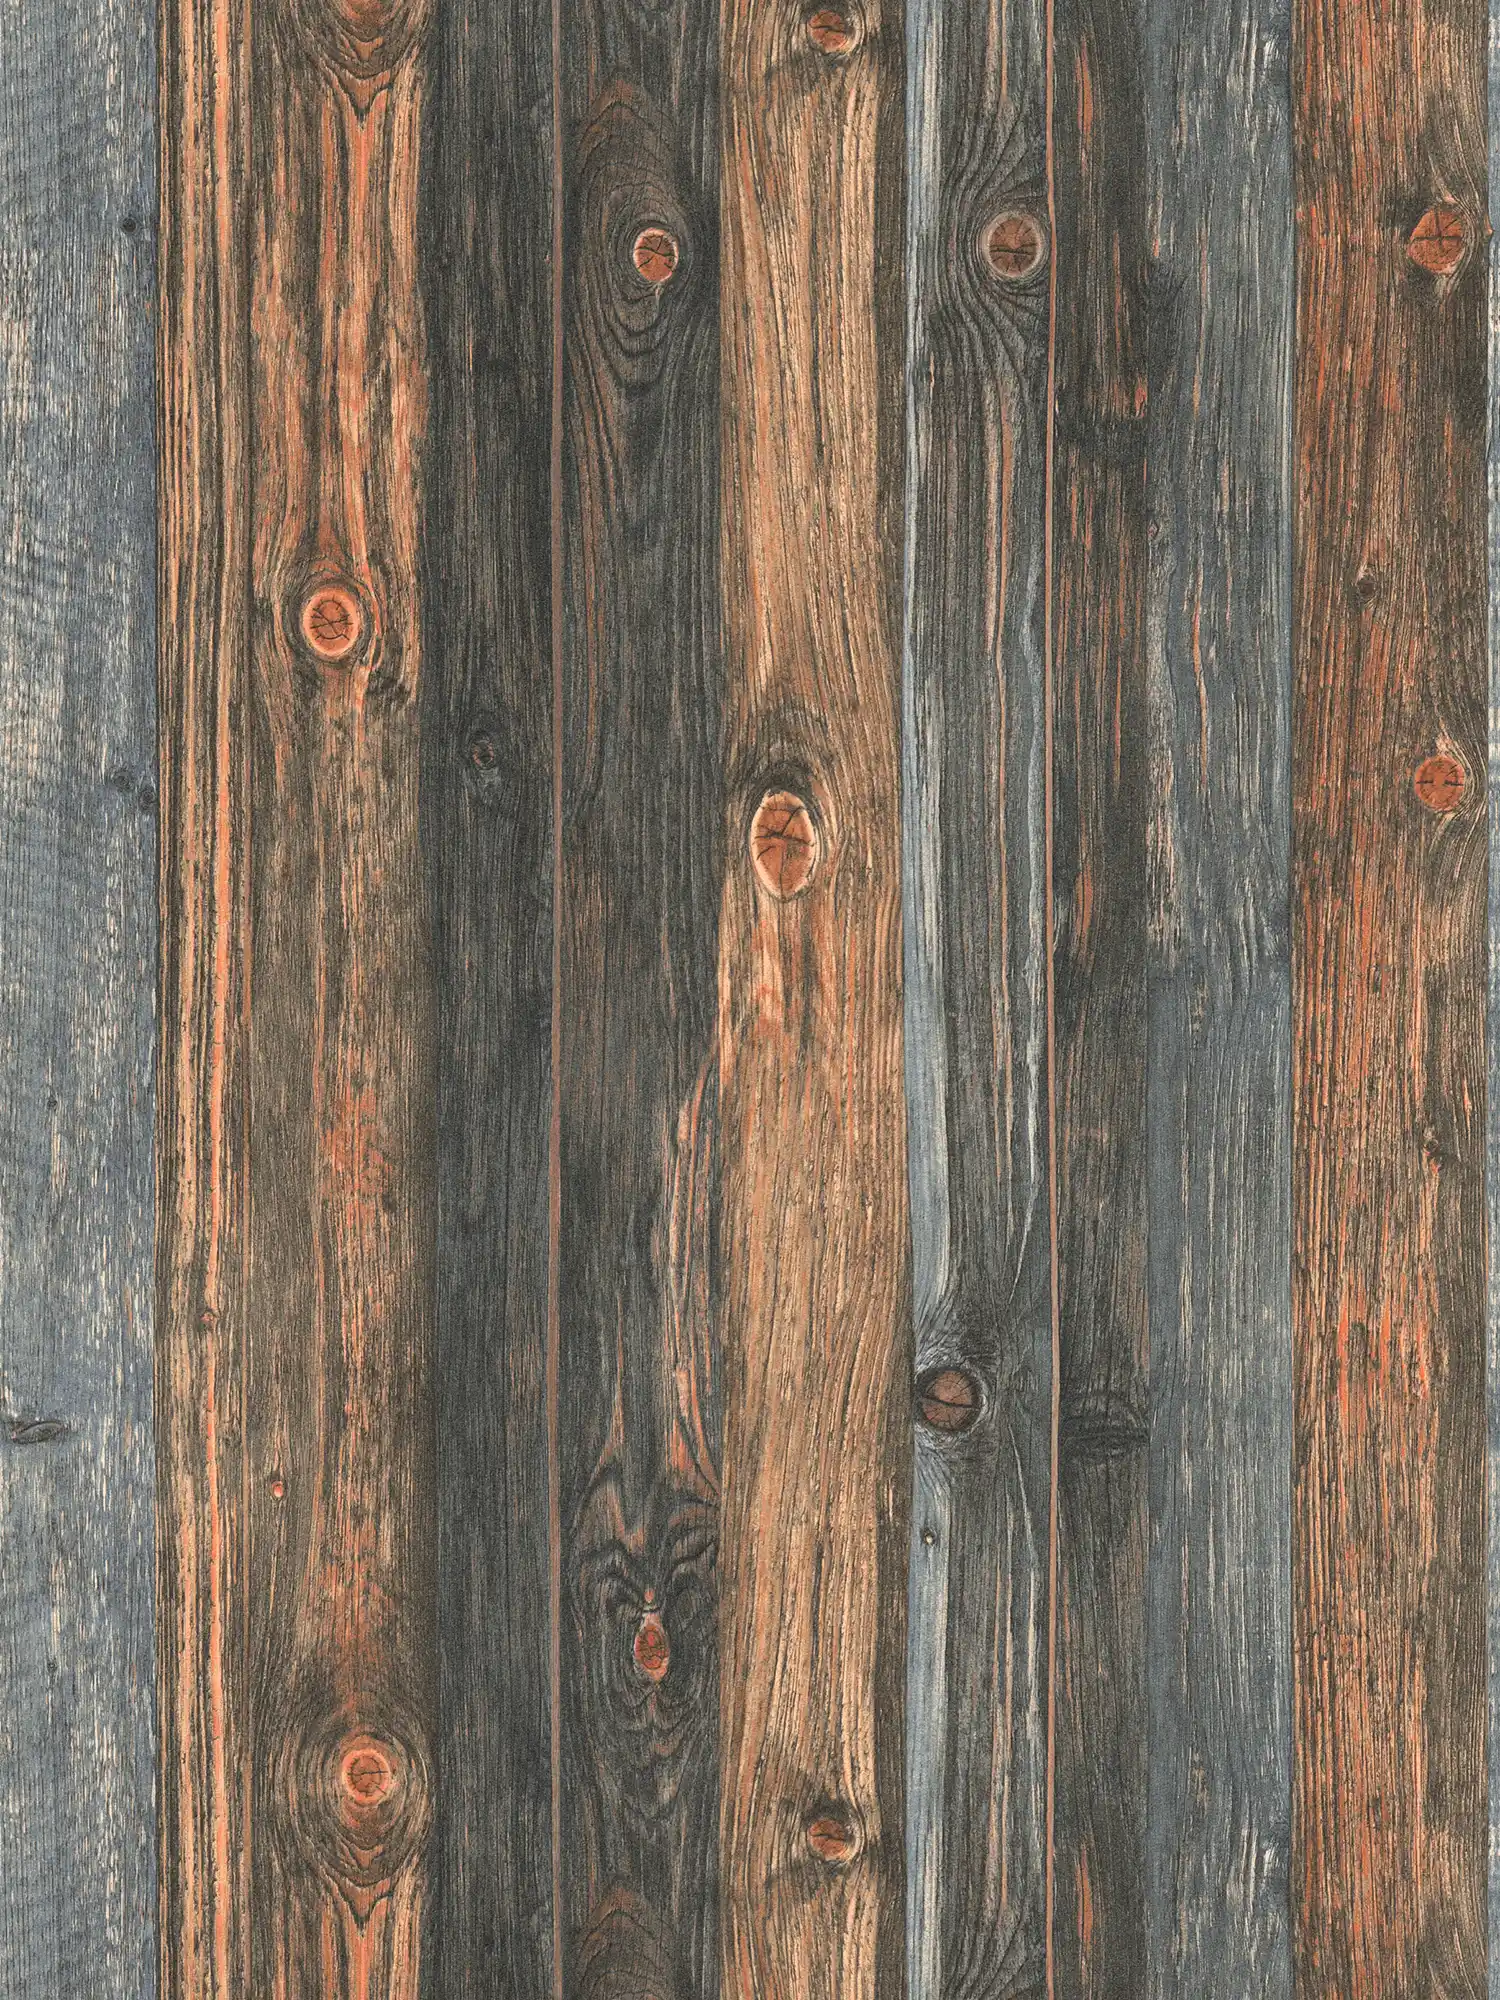         Holztapete mit Bretter Motiv, Holzstruktur & Maserung – Braun, Grau, Beige
    